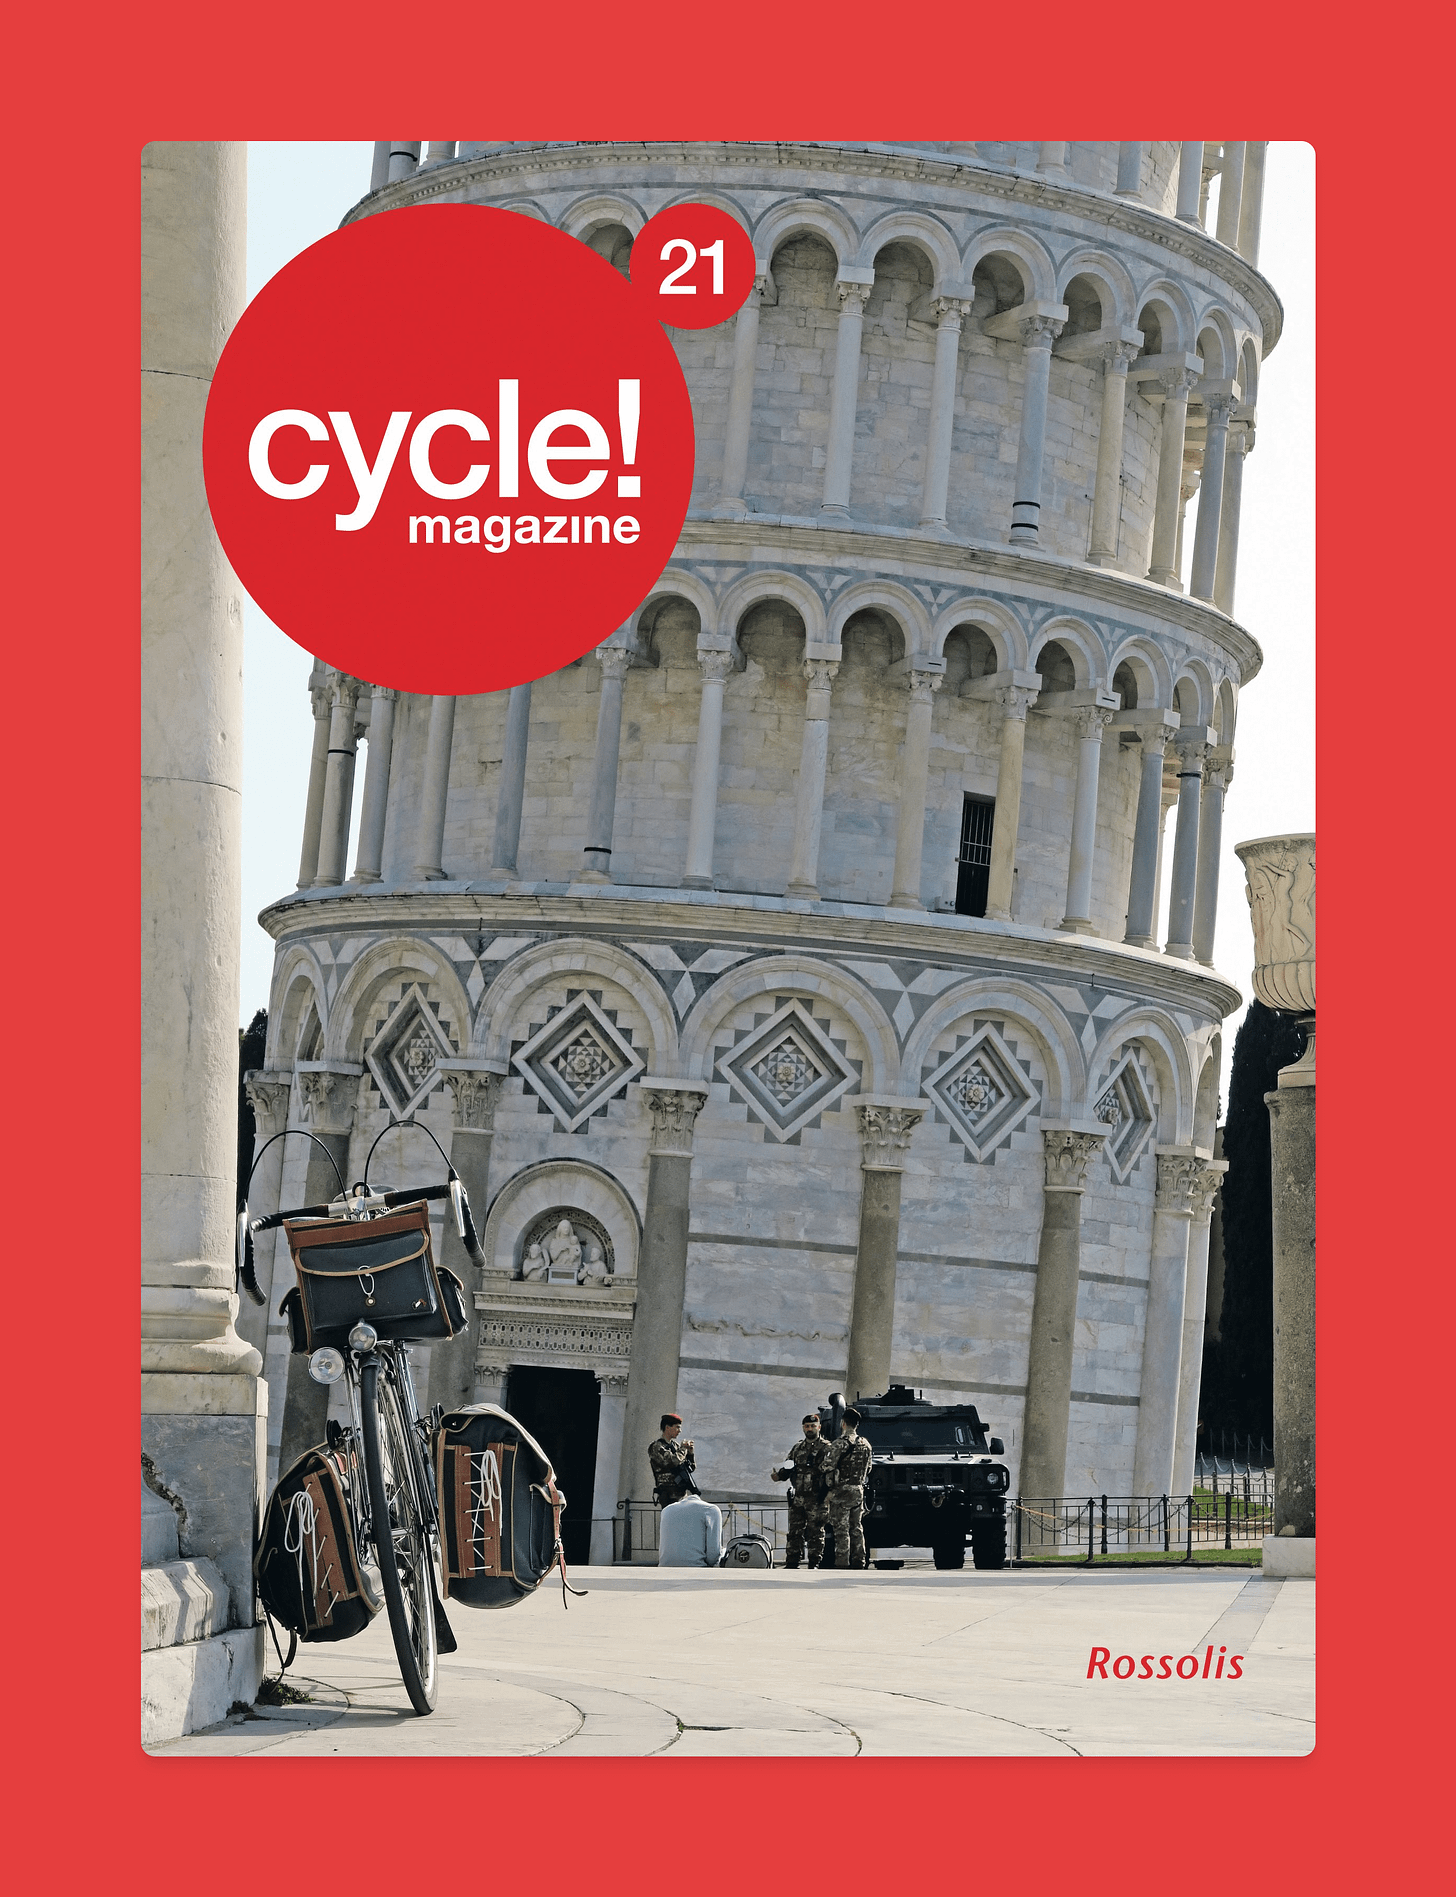 Illustration de cycle magazine. On voit une vélo devant la tour de pise en italie.